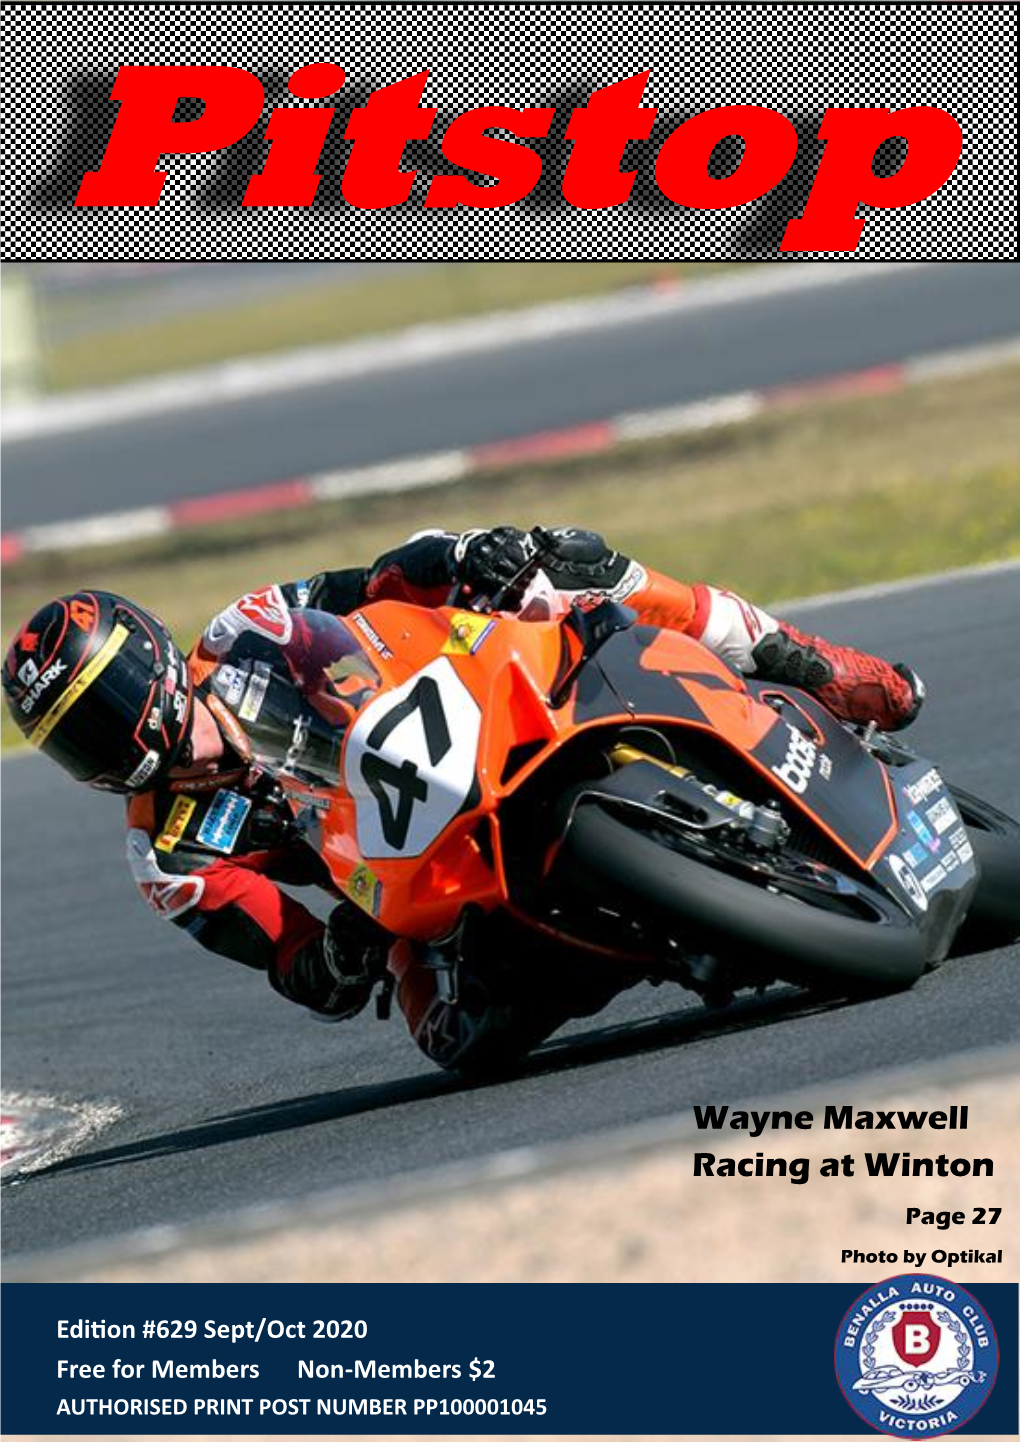 Wayne Maxwell Racing at Winton Page 27 Photo by Optikal